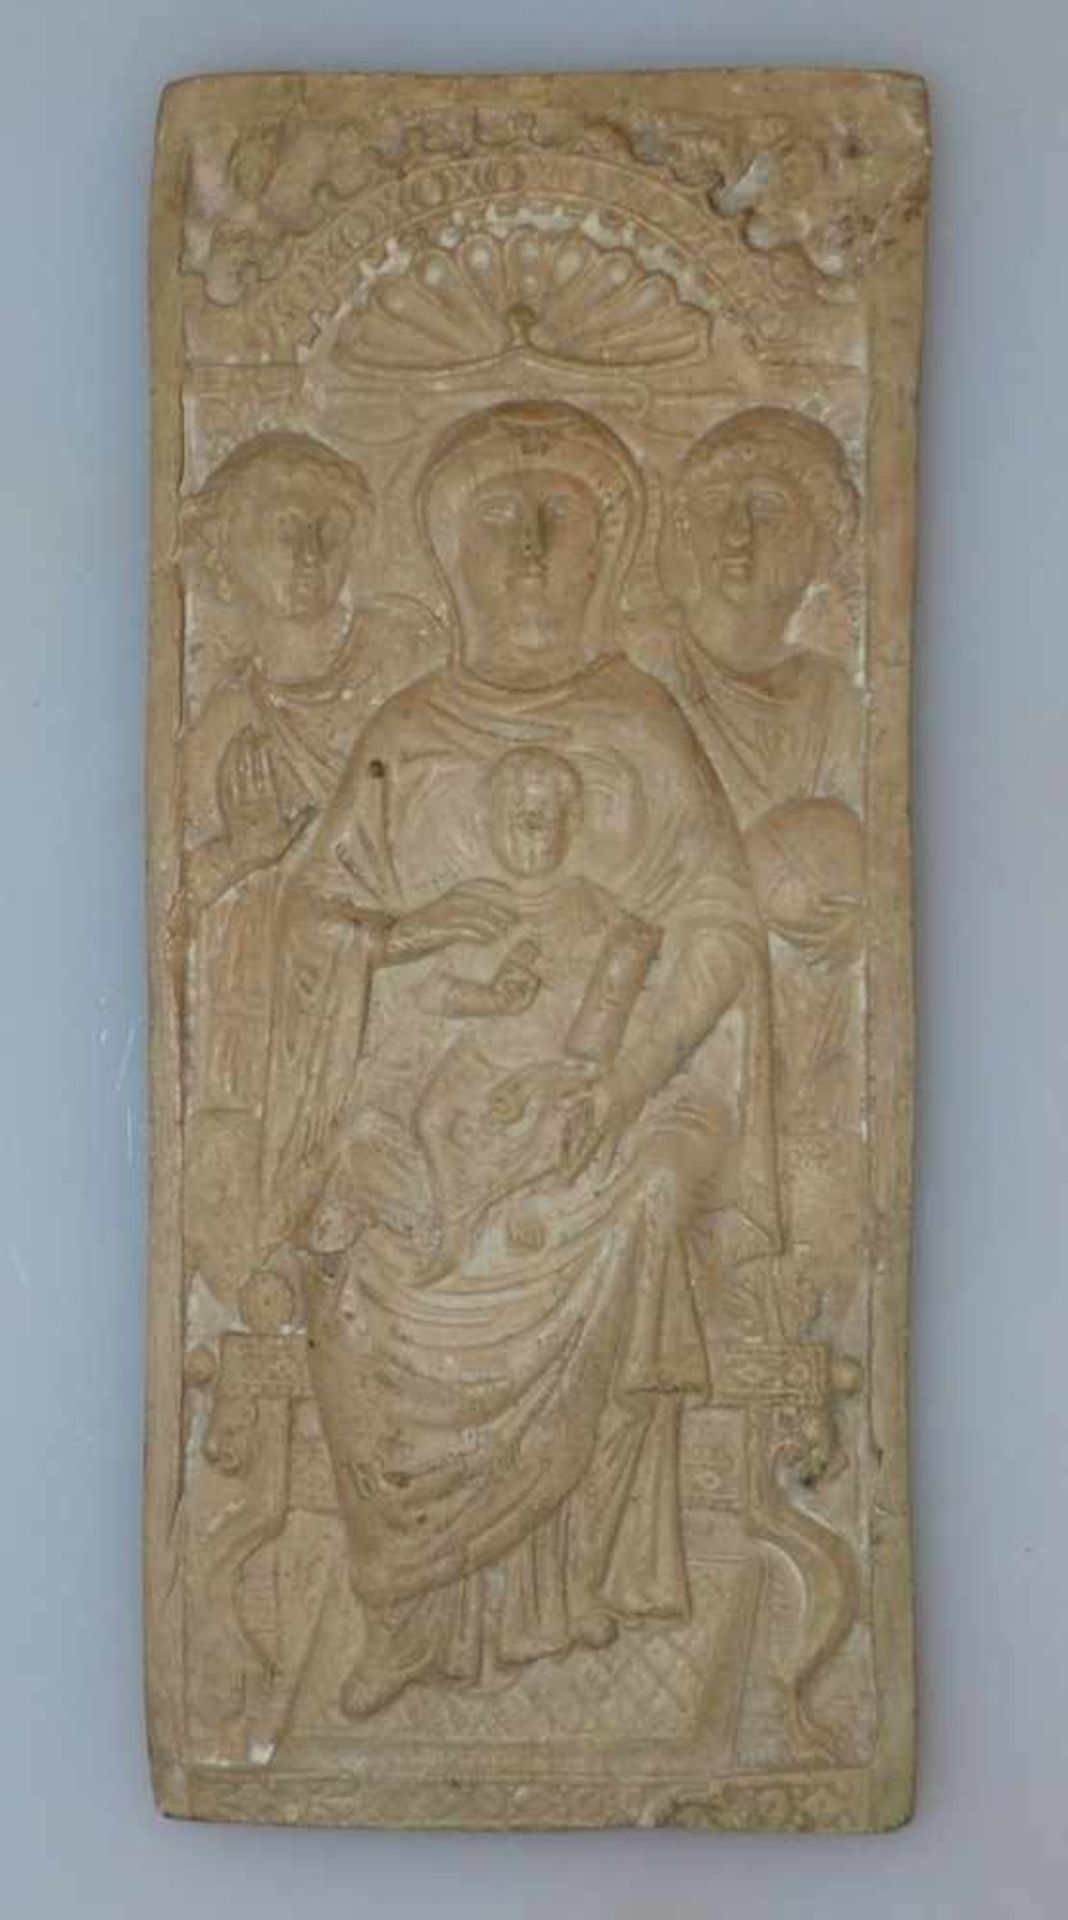 TonreliefNachguss eines byzantinischen ElfenbeinreliefsMaria als Himmelskönigin. Ton. 26,3 x 11,5